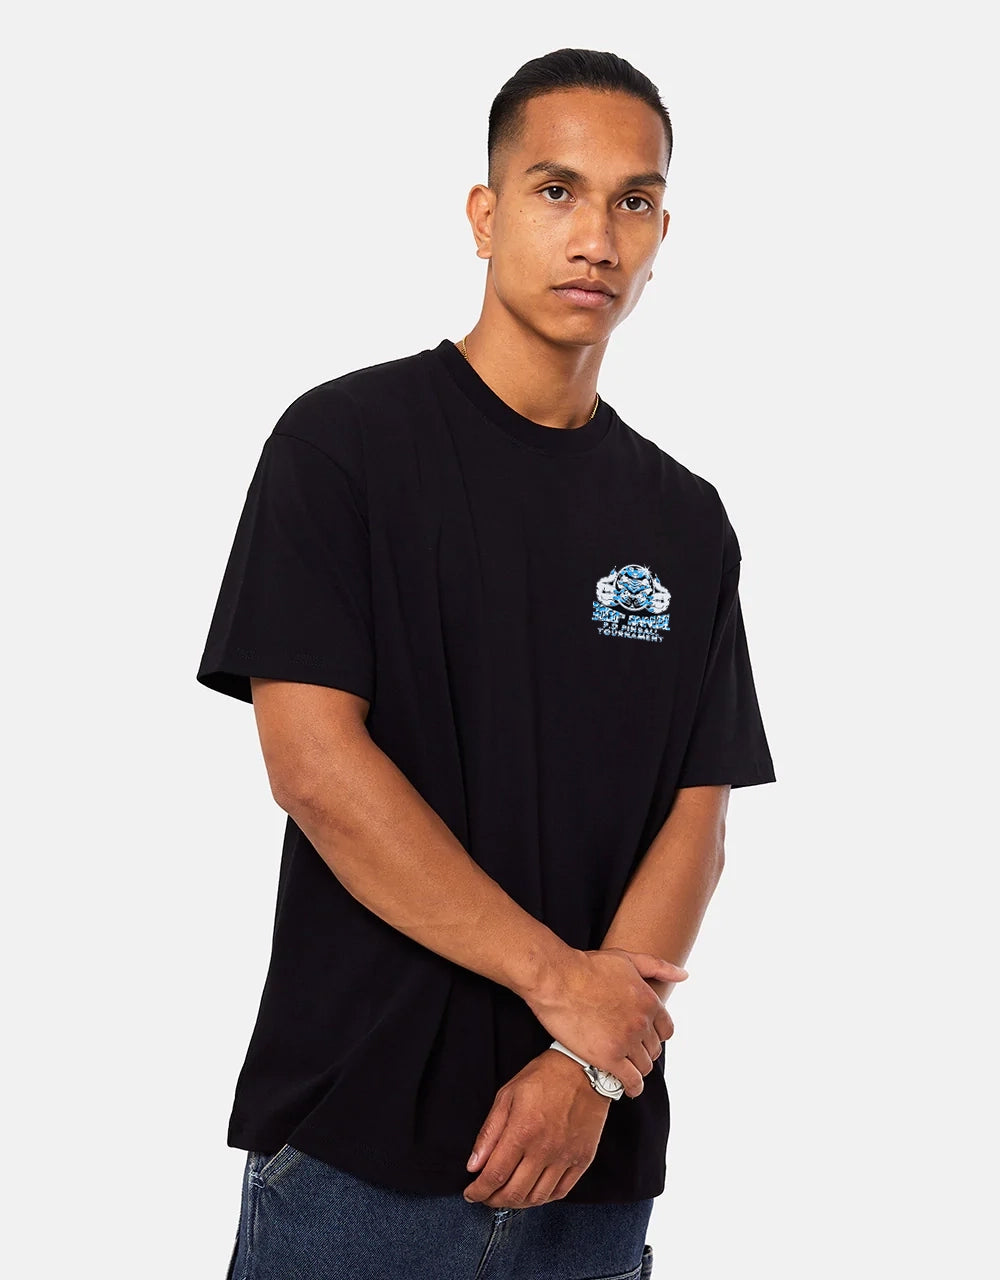 Playdude Pinball 3000 T-Shirt - Black